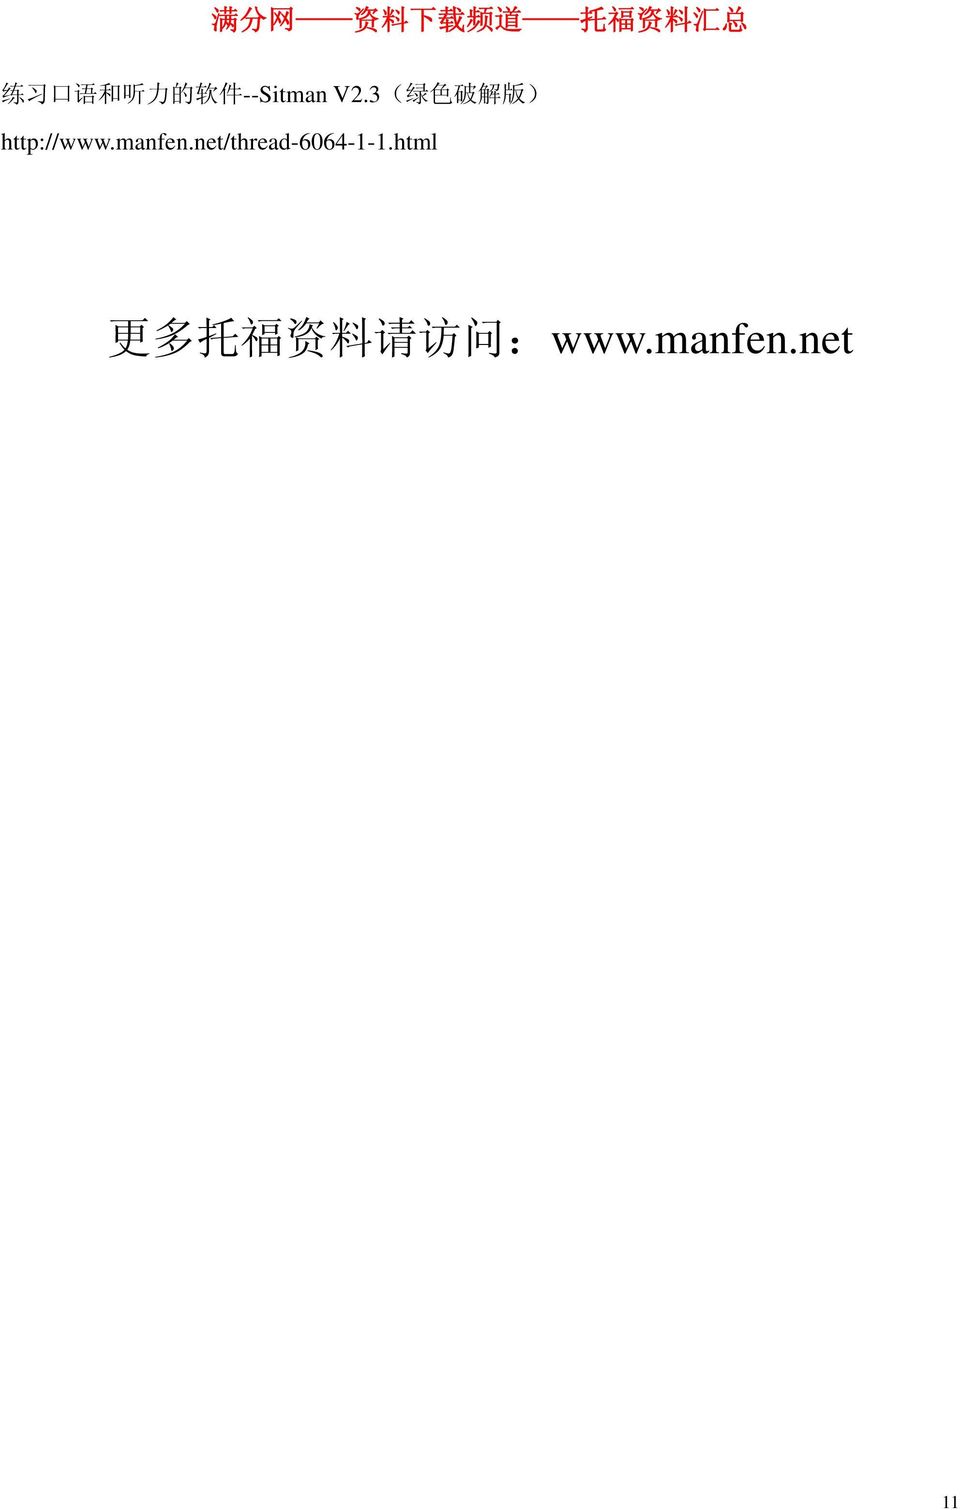 manfen.net/thread-6064-1-1.